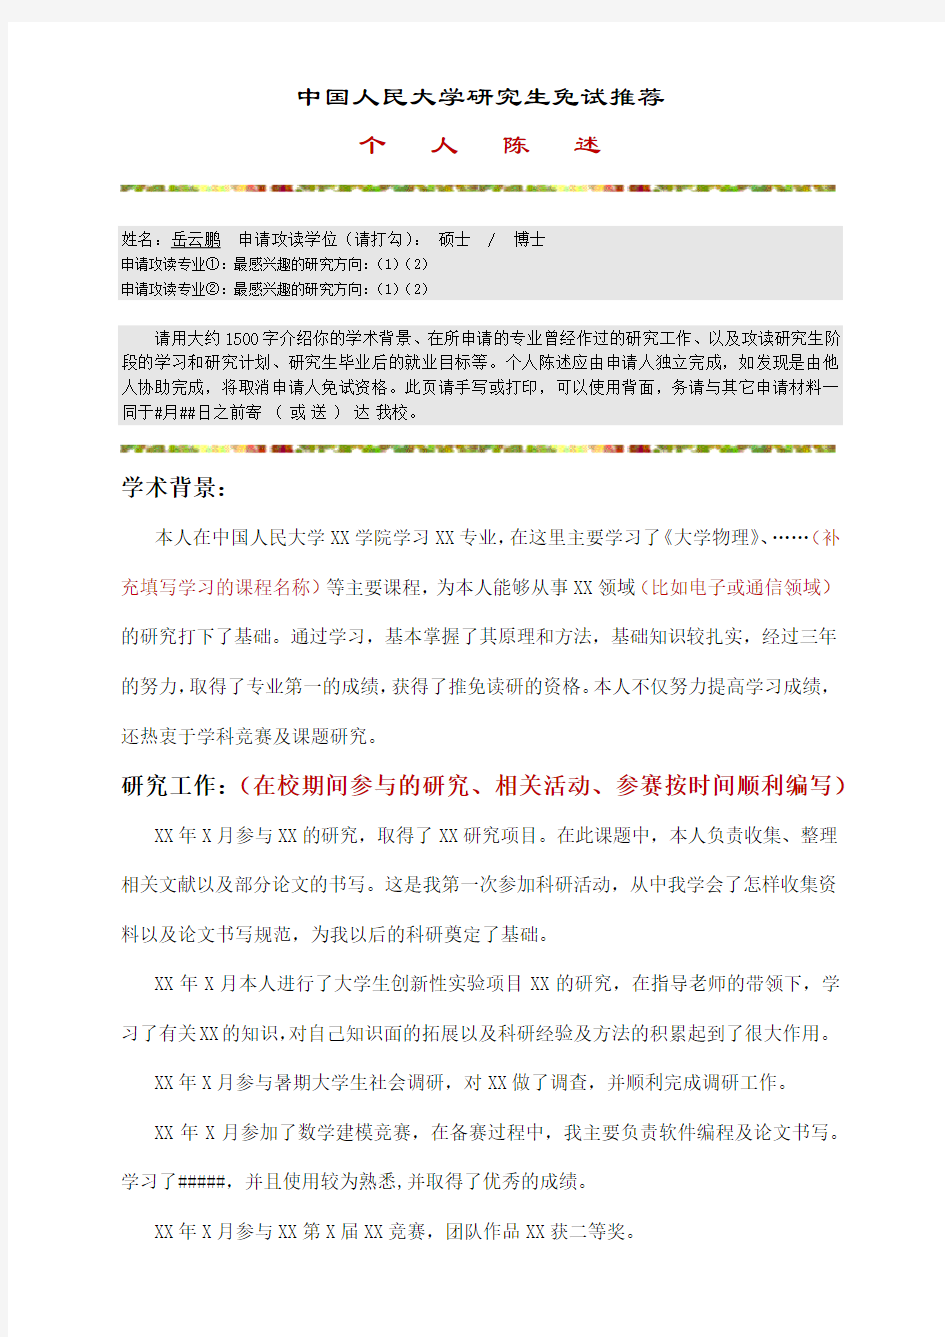 【推荐】个人陈述范文-中国人民大学研究生免试推荐个人陈述